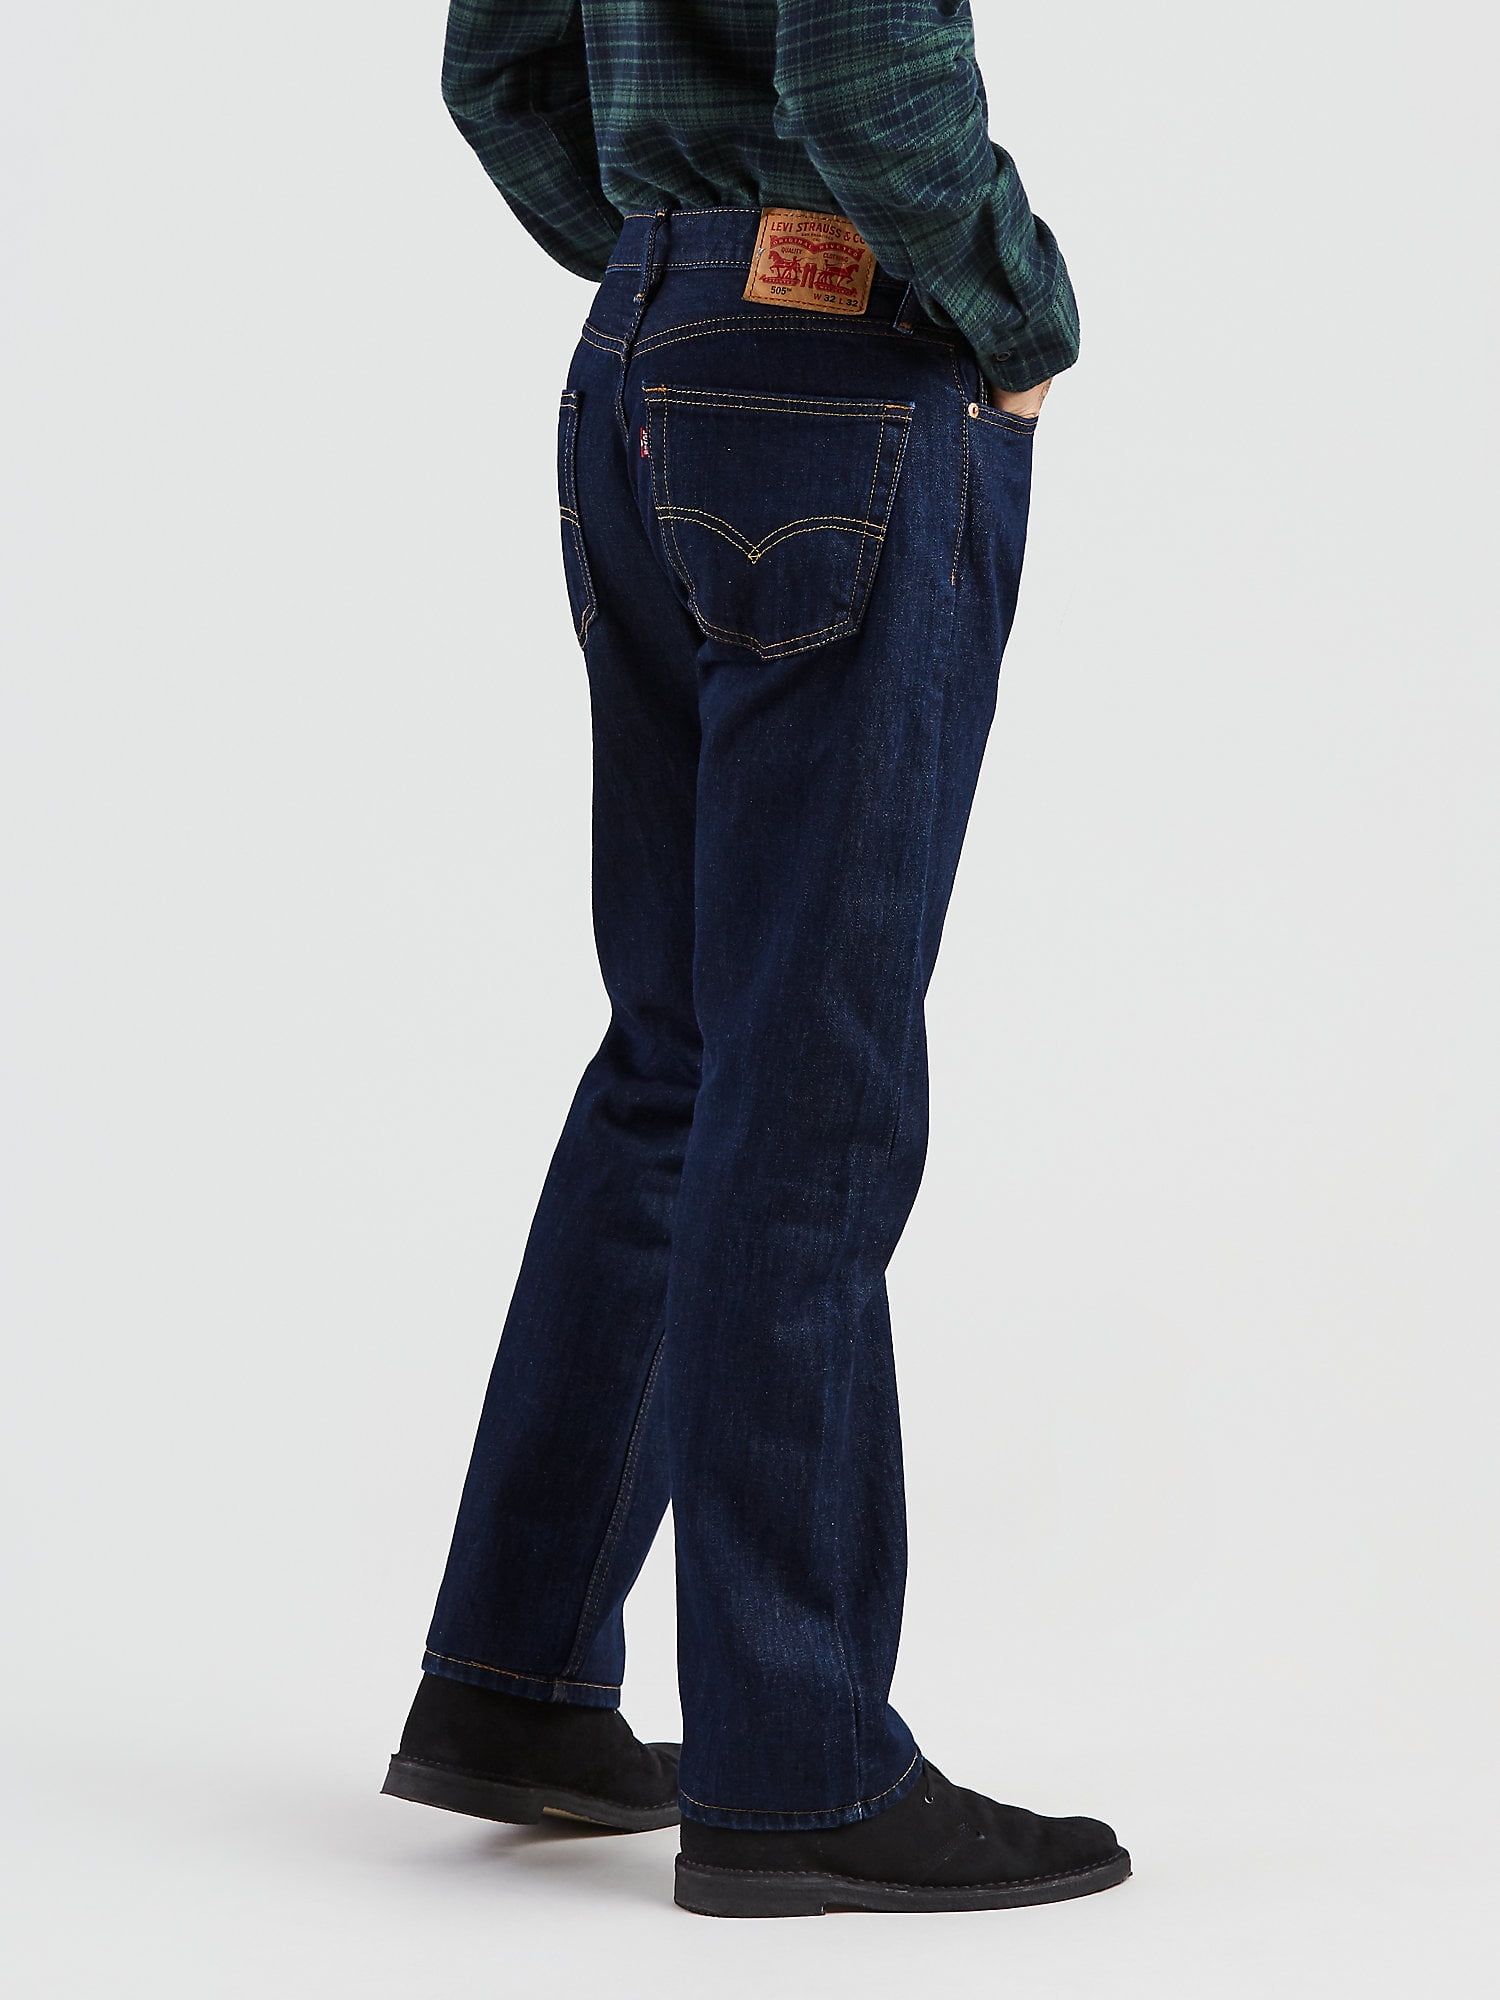 levis jeans 505